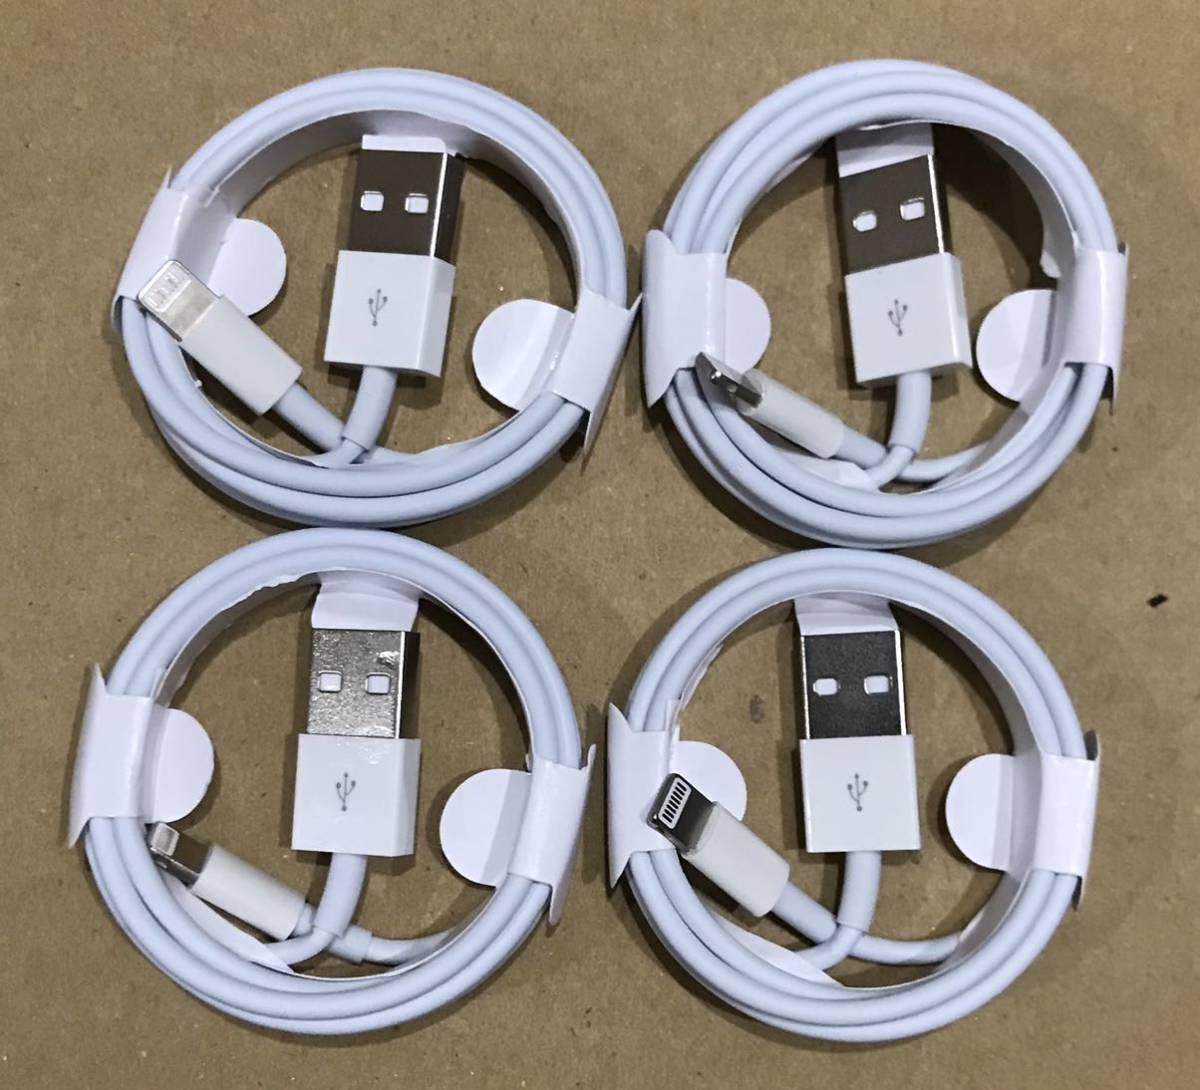 ○日本正規品○ iPhone ライトニングケーブル 2本 新品 USB 充電器 純正品質